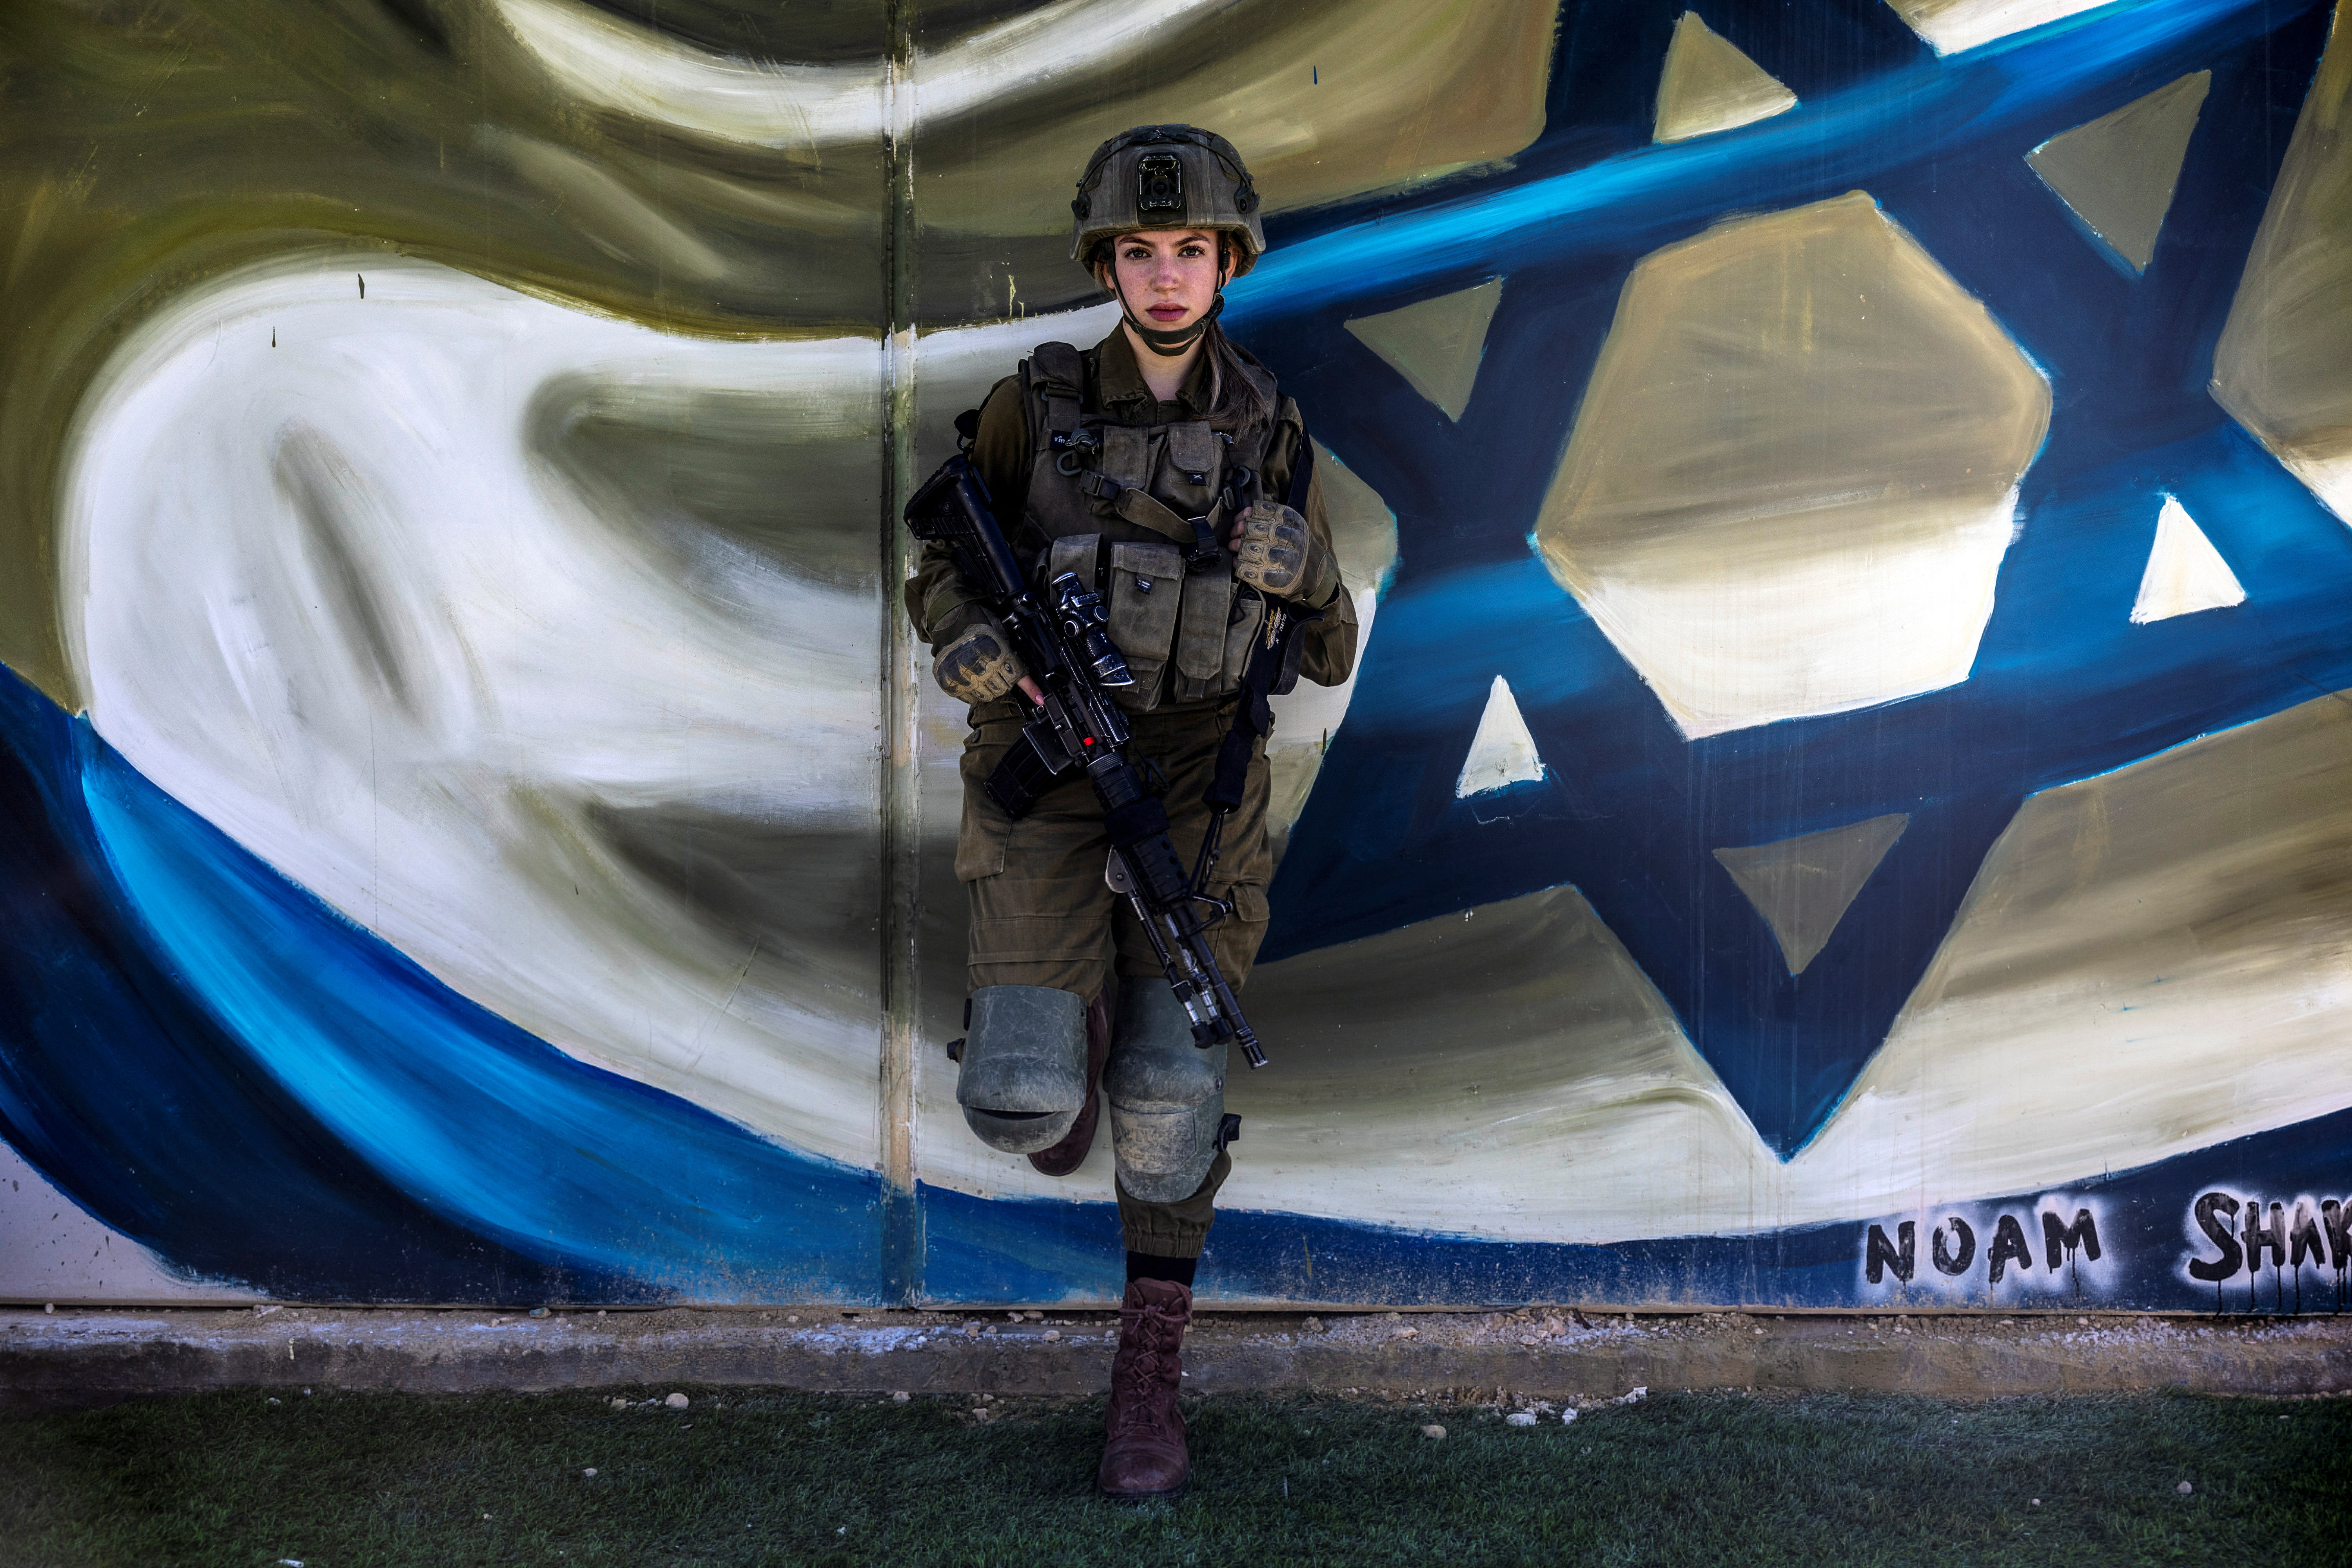 Israeli women serve in combat roles as Gaza war rages